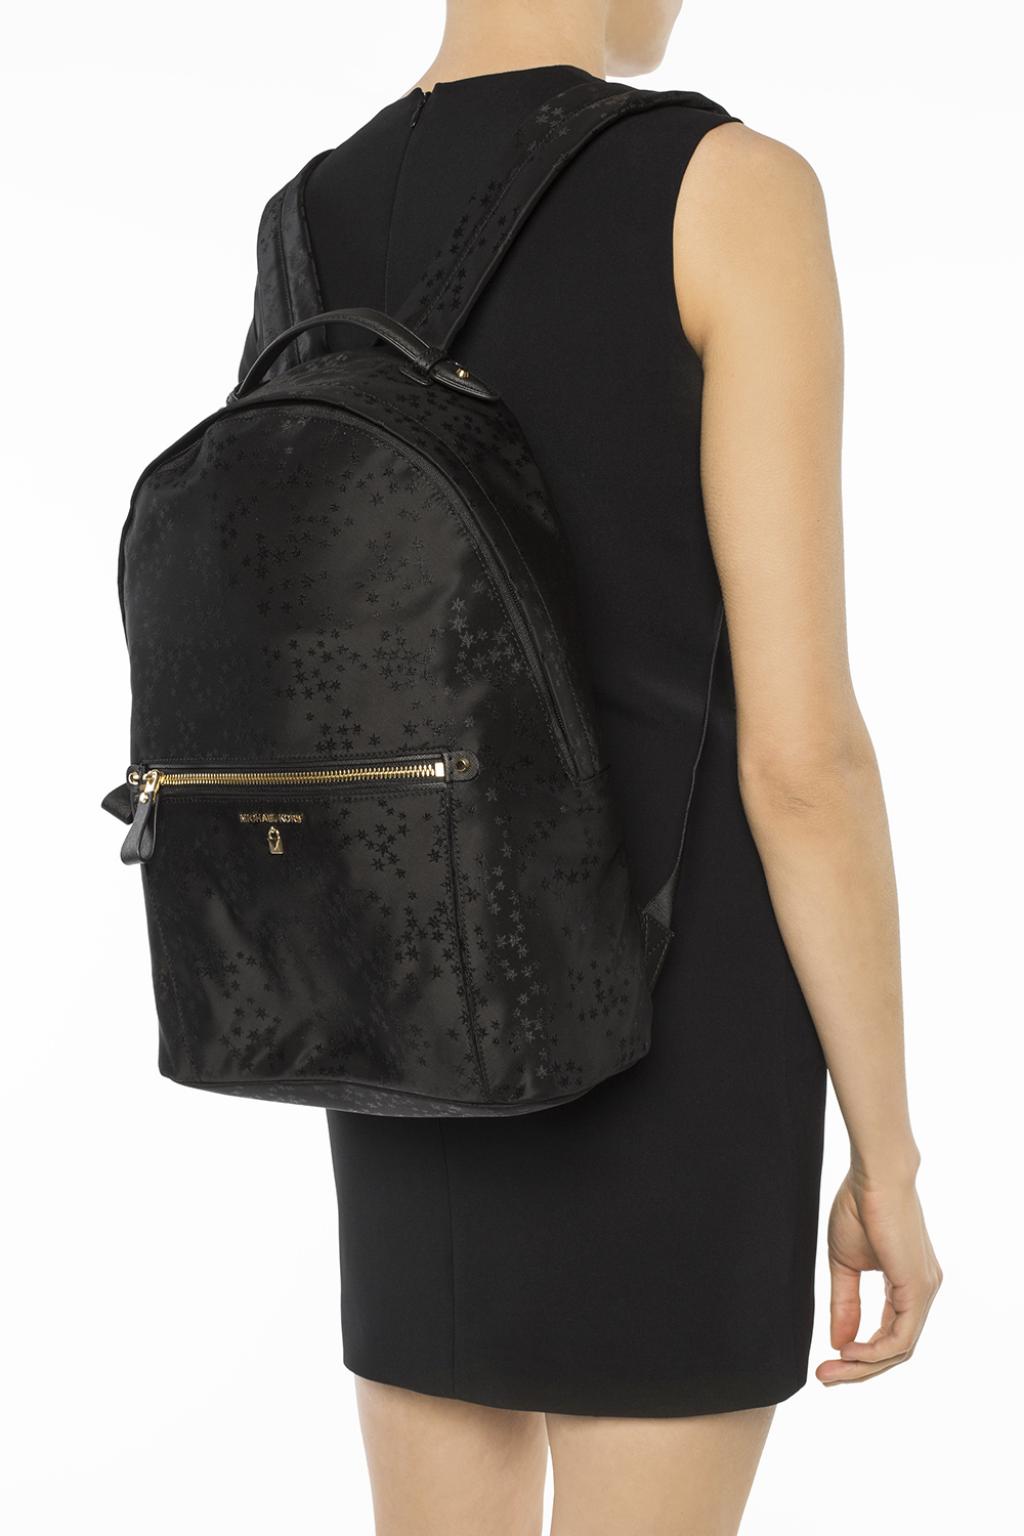 Shop for Michael Kors Black Kelsey Star Print Large Backpack